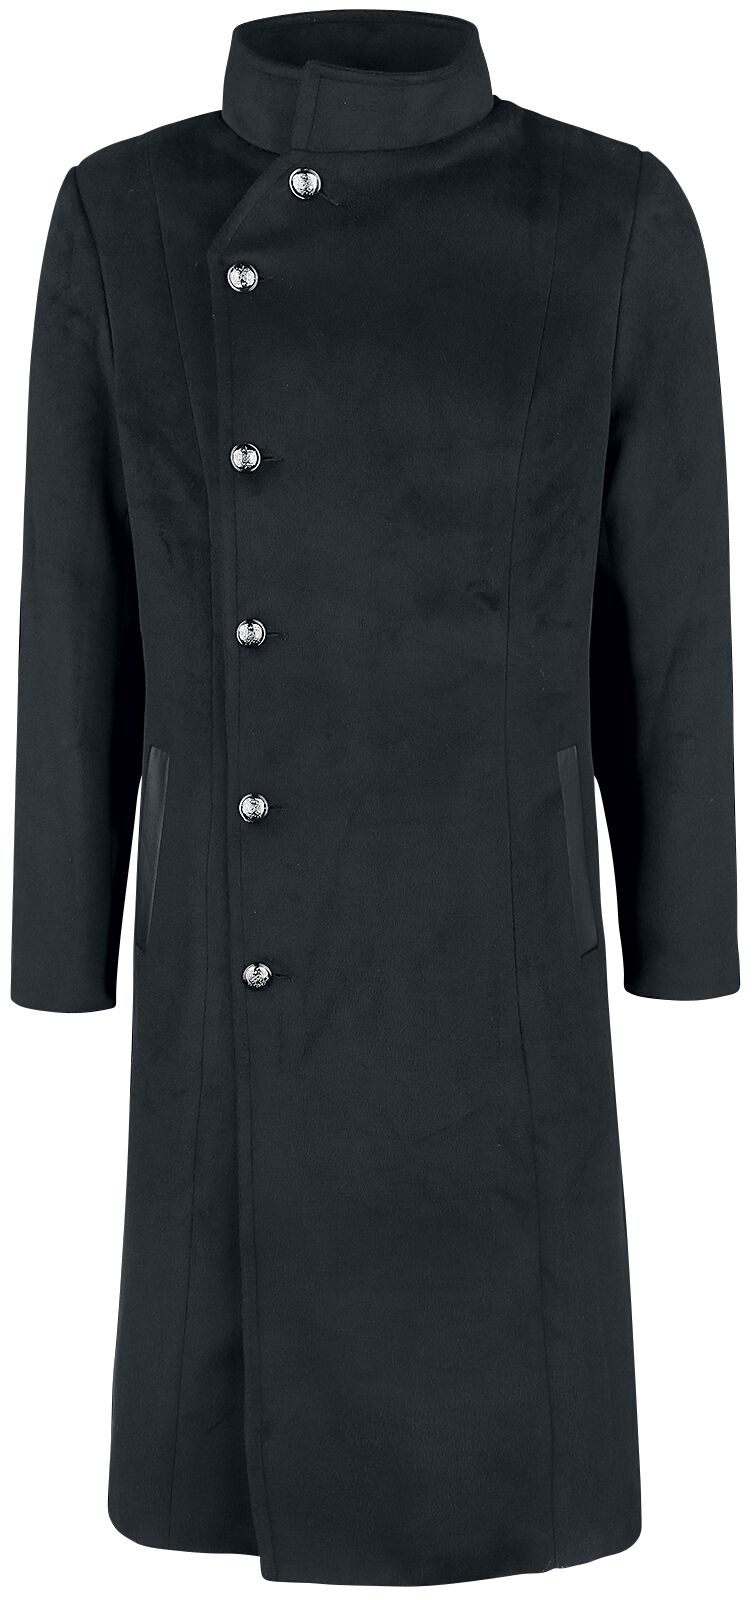 H&R London - Gothic Wintermantel - Winter Coat - S bis 4XL - für Männer - Größe 4XL - schwarz von H&R London